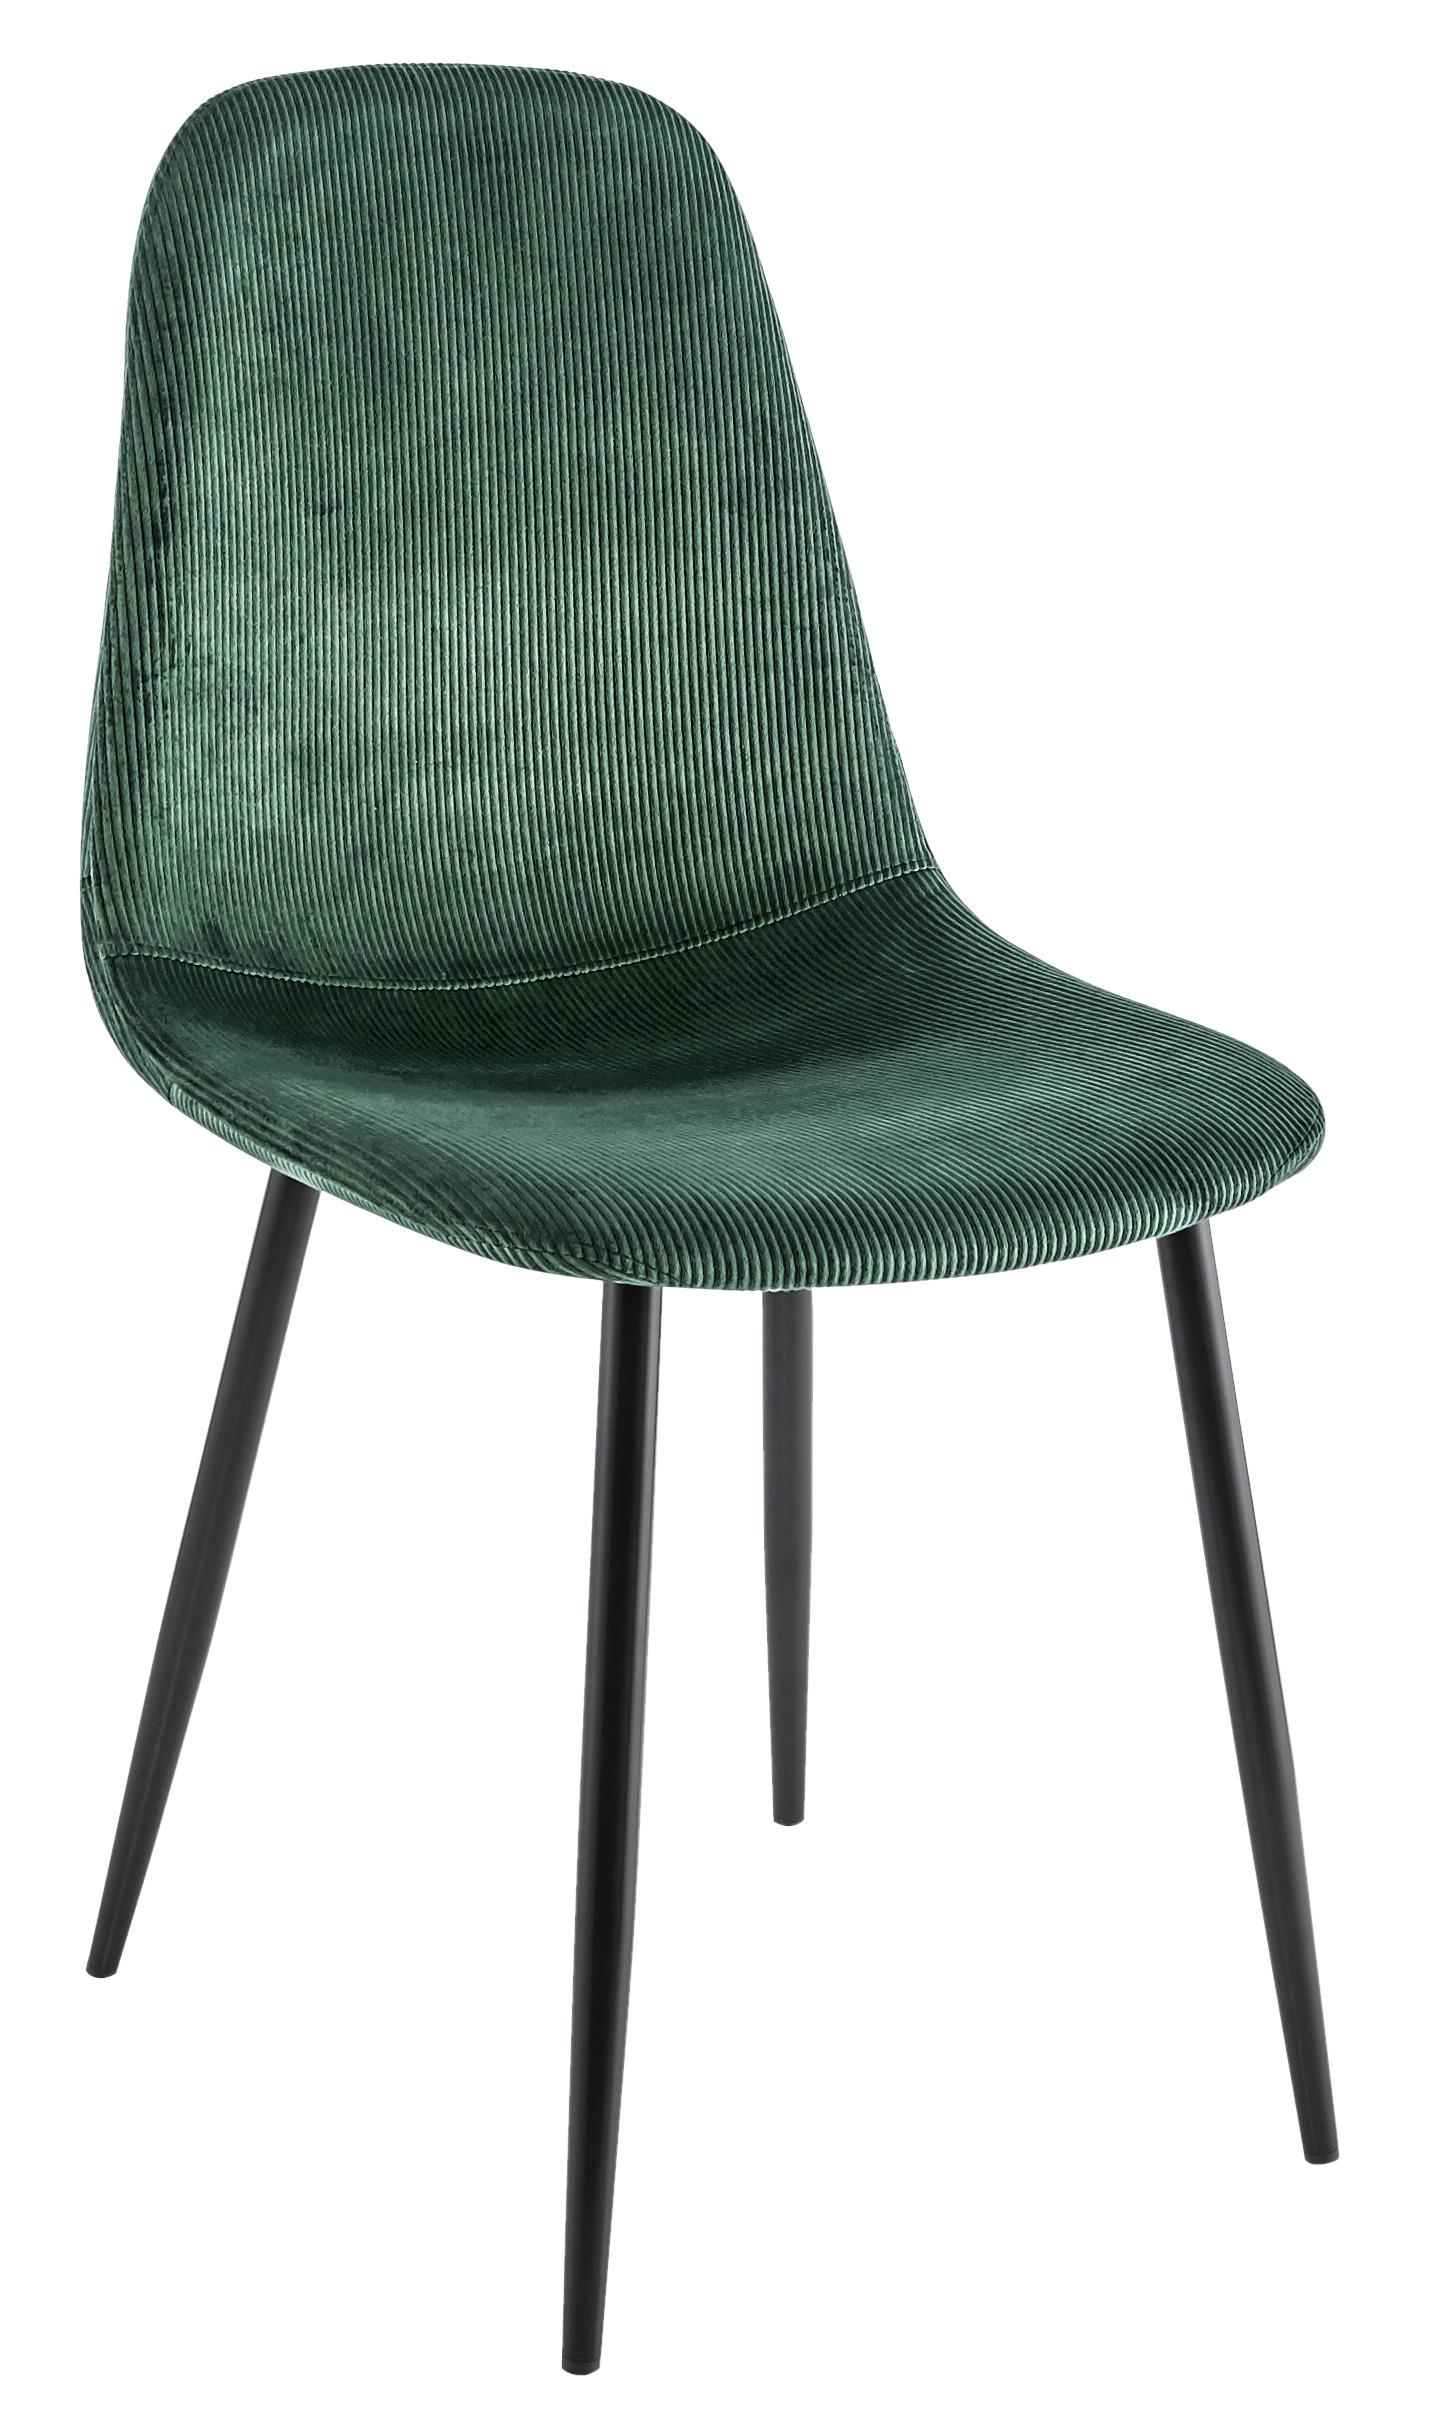 Židle Cordula - černá/zelená, Moderní, kov/textil (44,5/86,5/54cm) - Modern Living